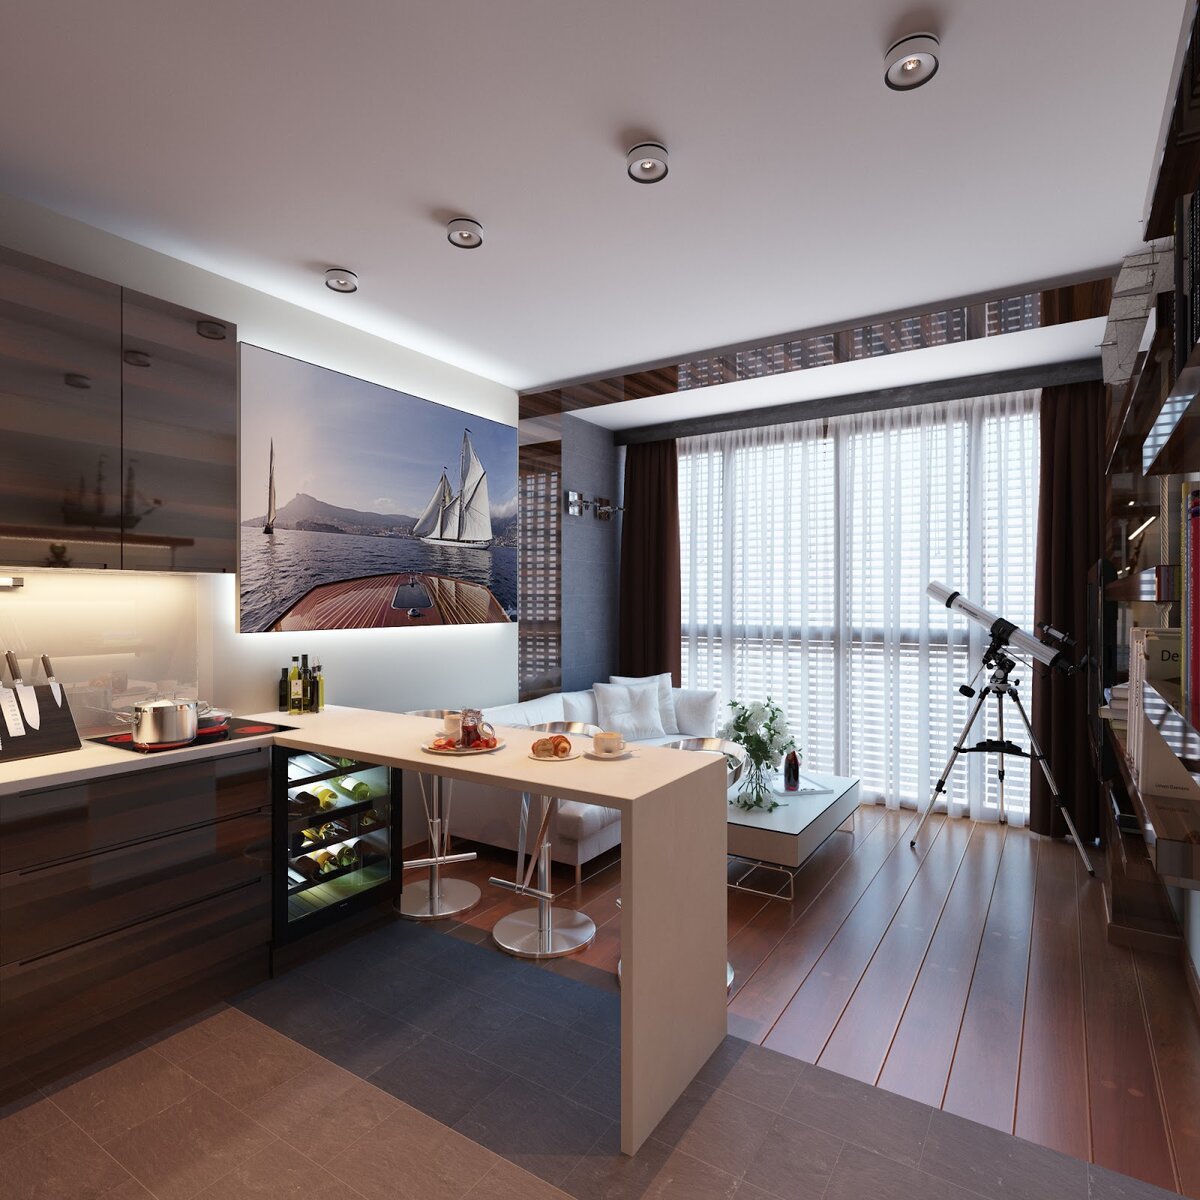 Дизайн кухни - гостиной 30 кв. м. - 125 фото эксклюзивных решений по зонированию